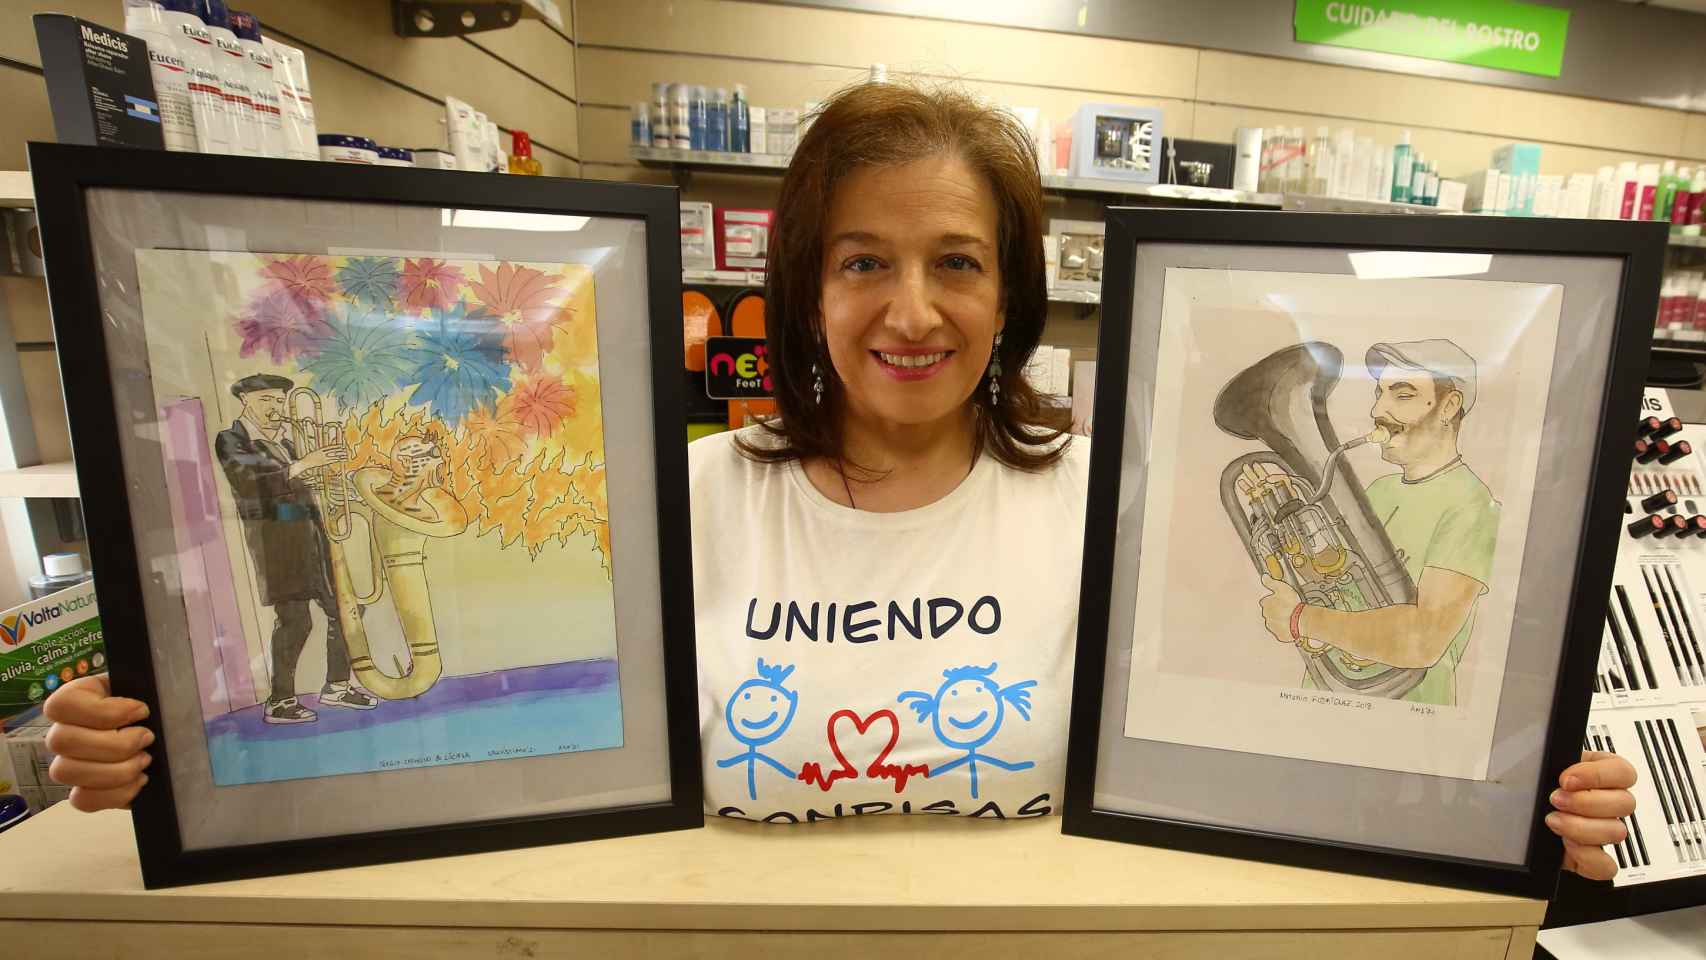 La farmacéutica berciana, Ana María Alfonso, presidenta de la asociación 'Uniendo sonrisas', y autora del libro 'Alma quiere una tuba´